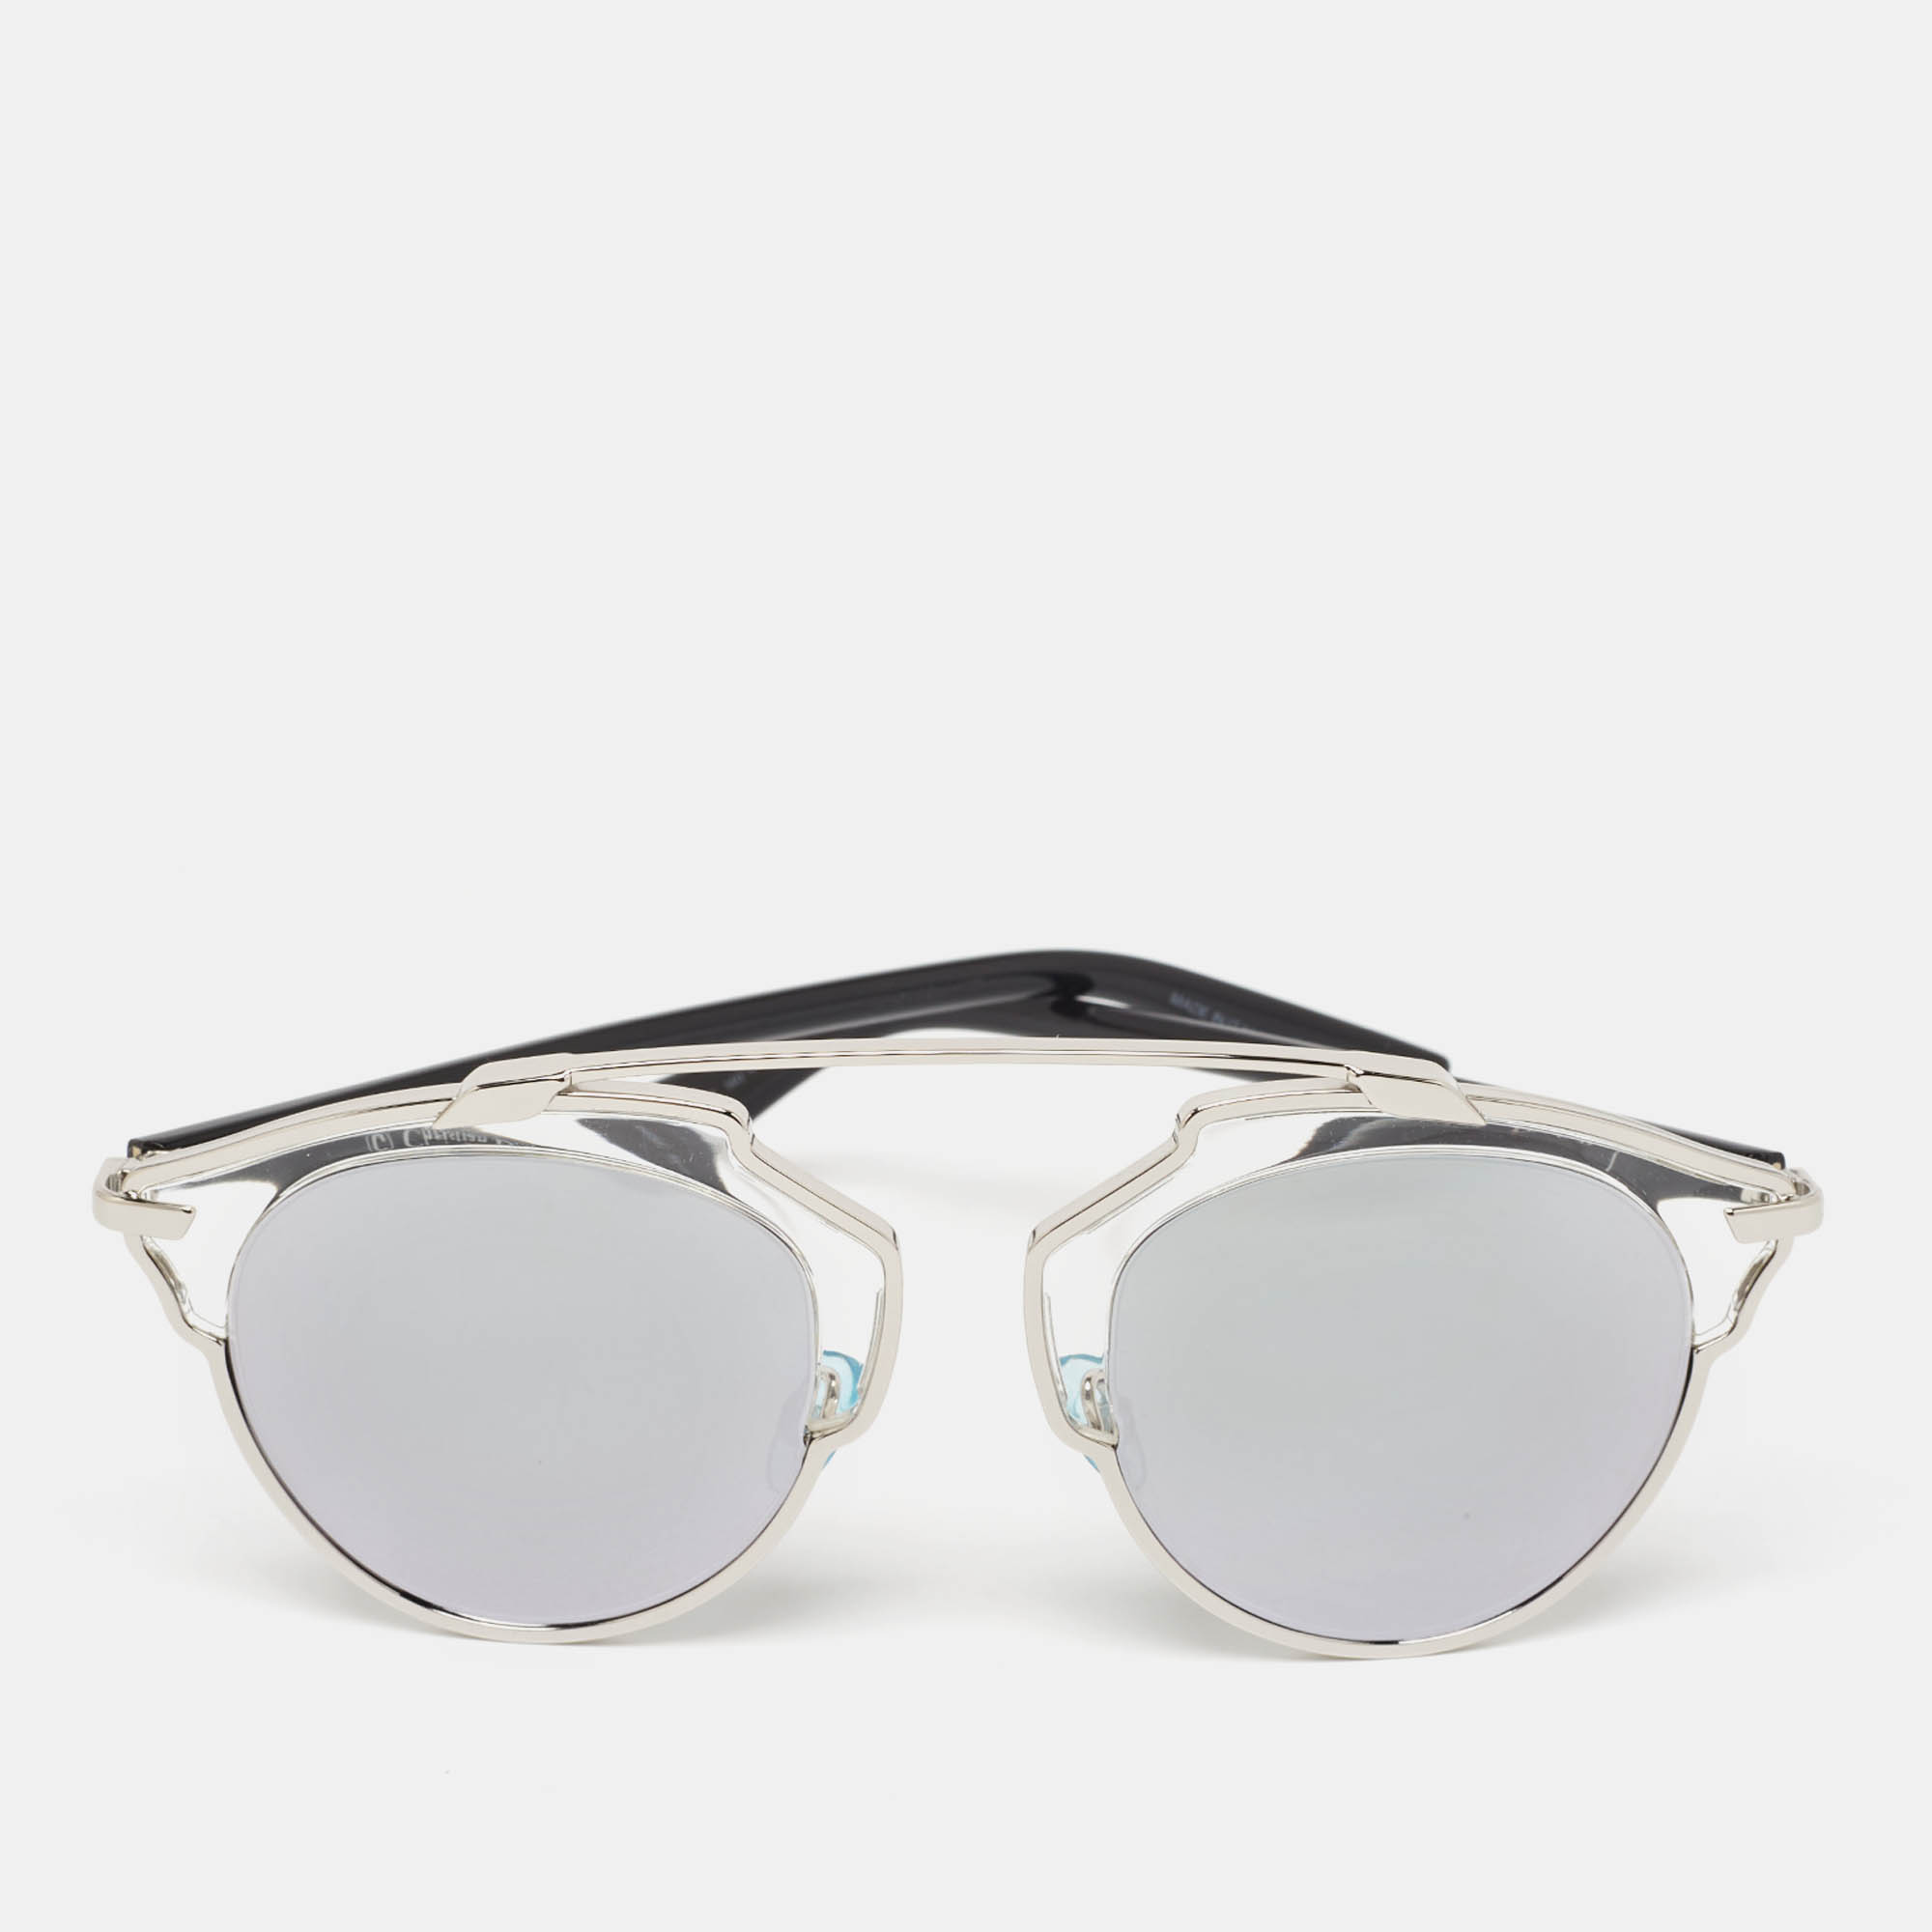 Dior silver/black diorsoreal mirrored round sunglasses